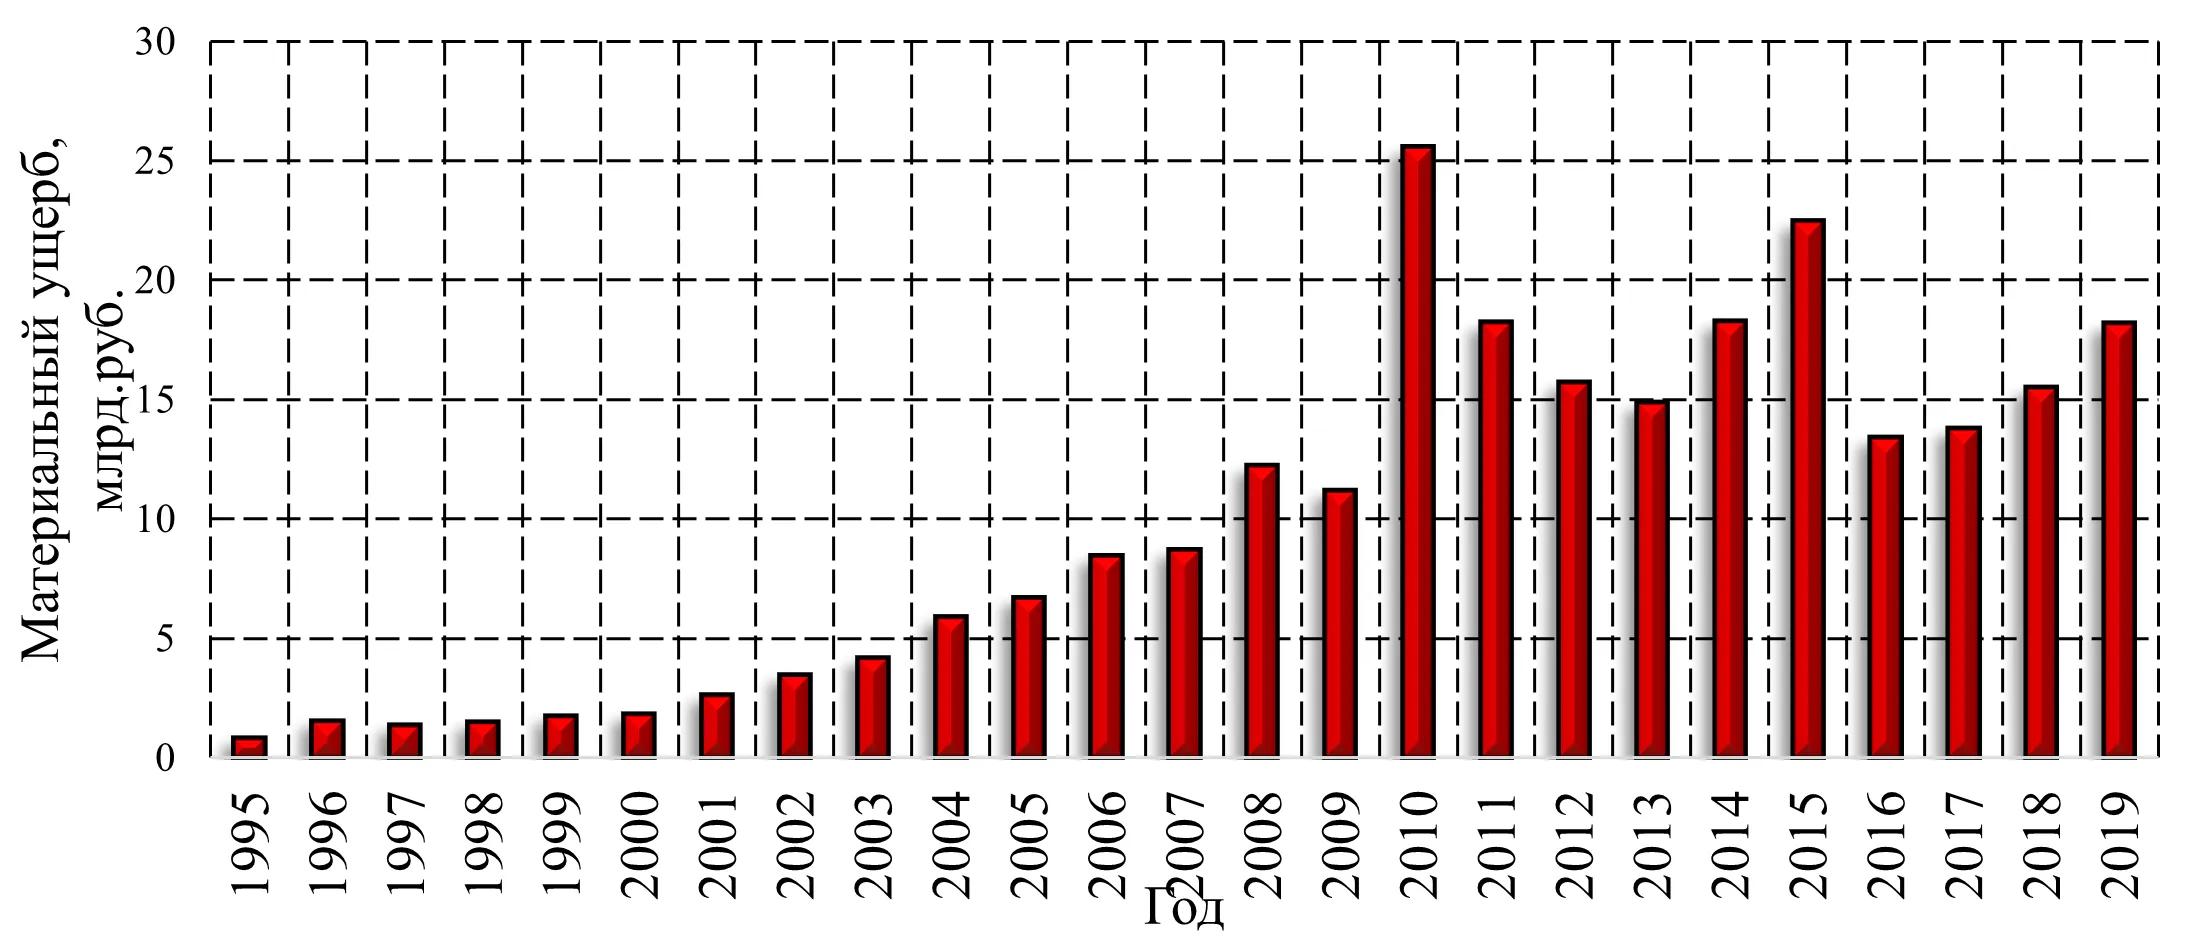 Гистограмма распределения прямого материального ущерба от пожаров в Российской Федерации с 1995 по 2019 года